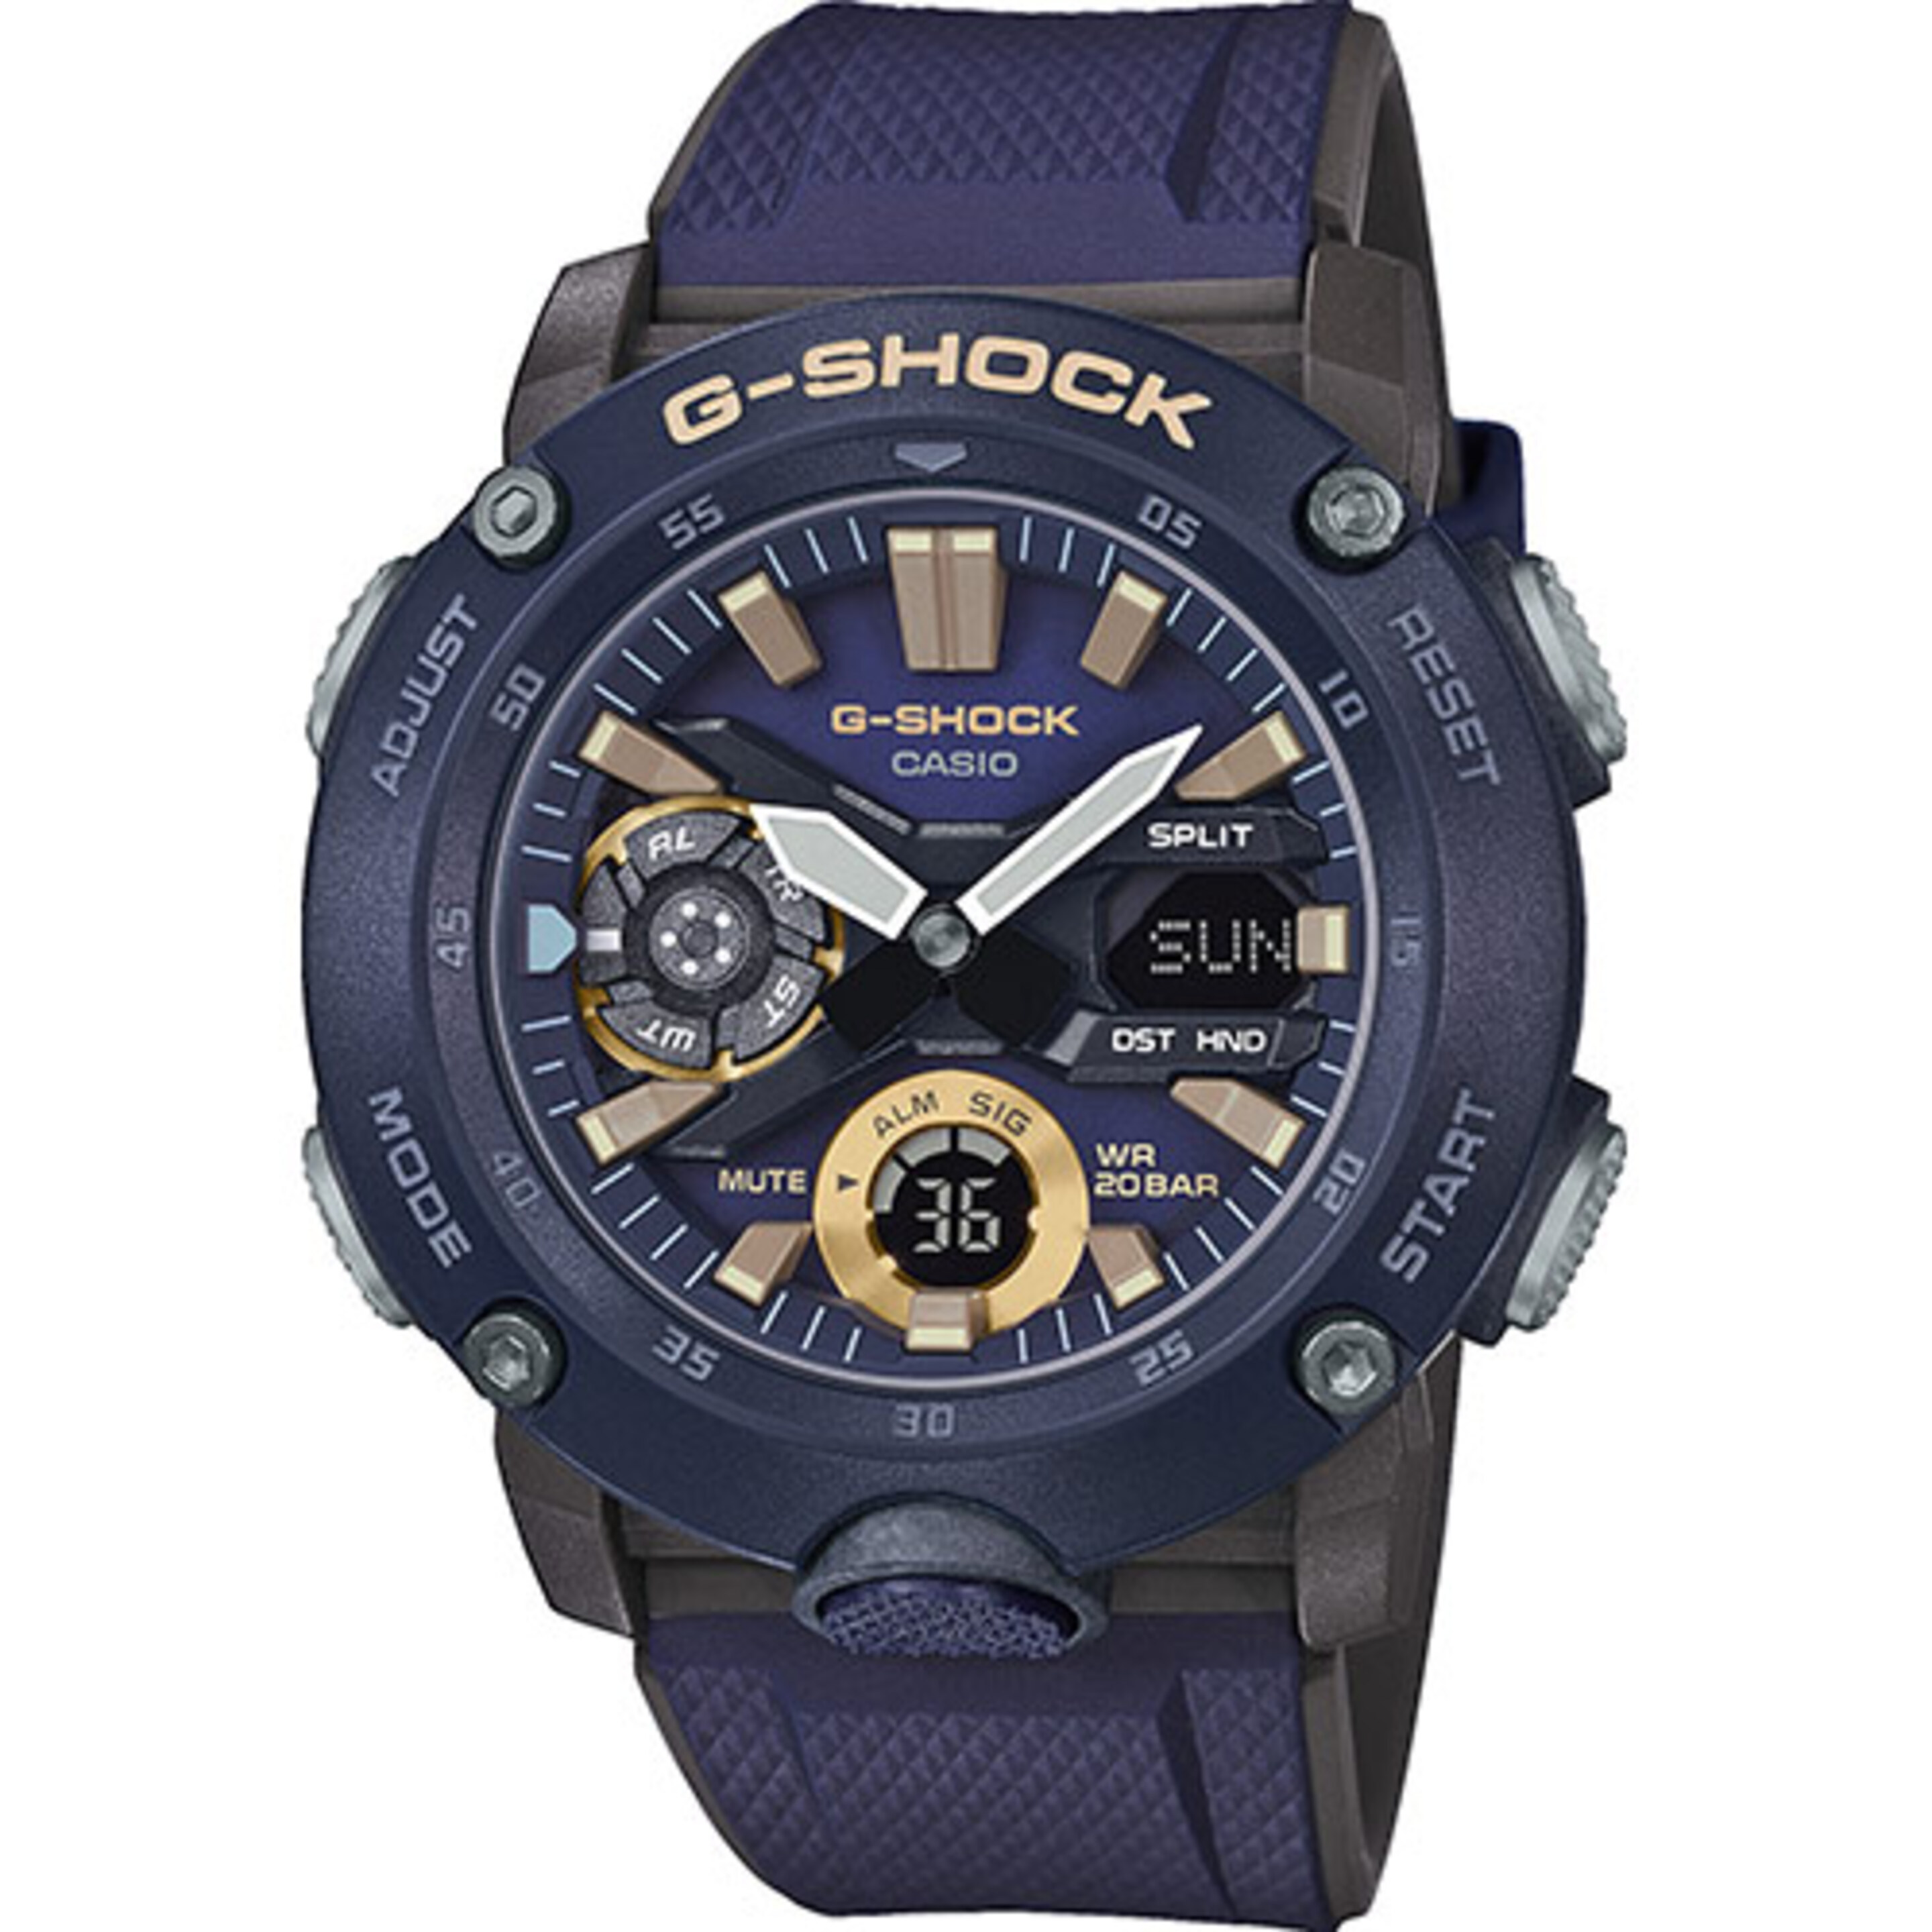 Reloj Casio G-shock Ga-2000-2aer - azul_oscuro - Reloj Deportivo  MKP